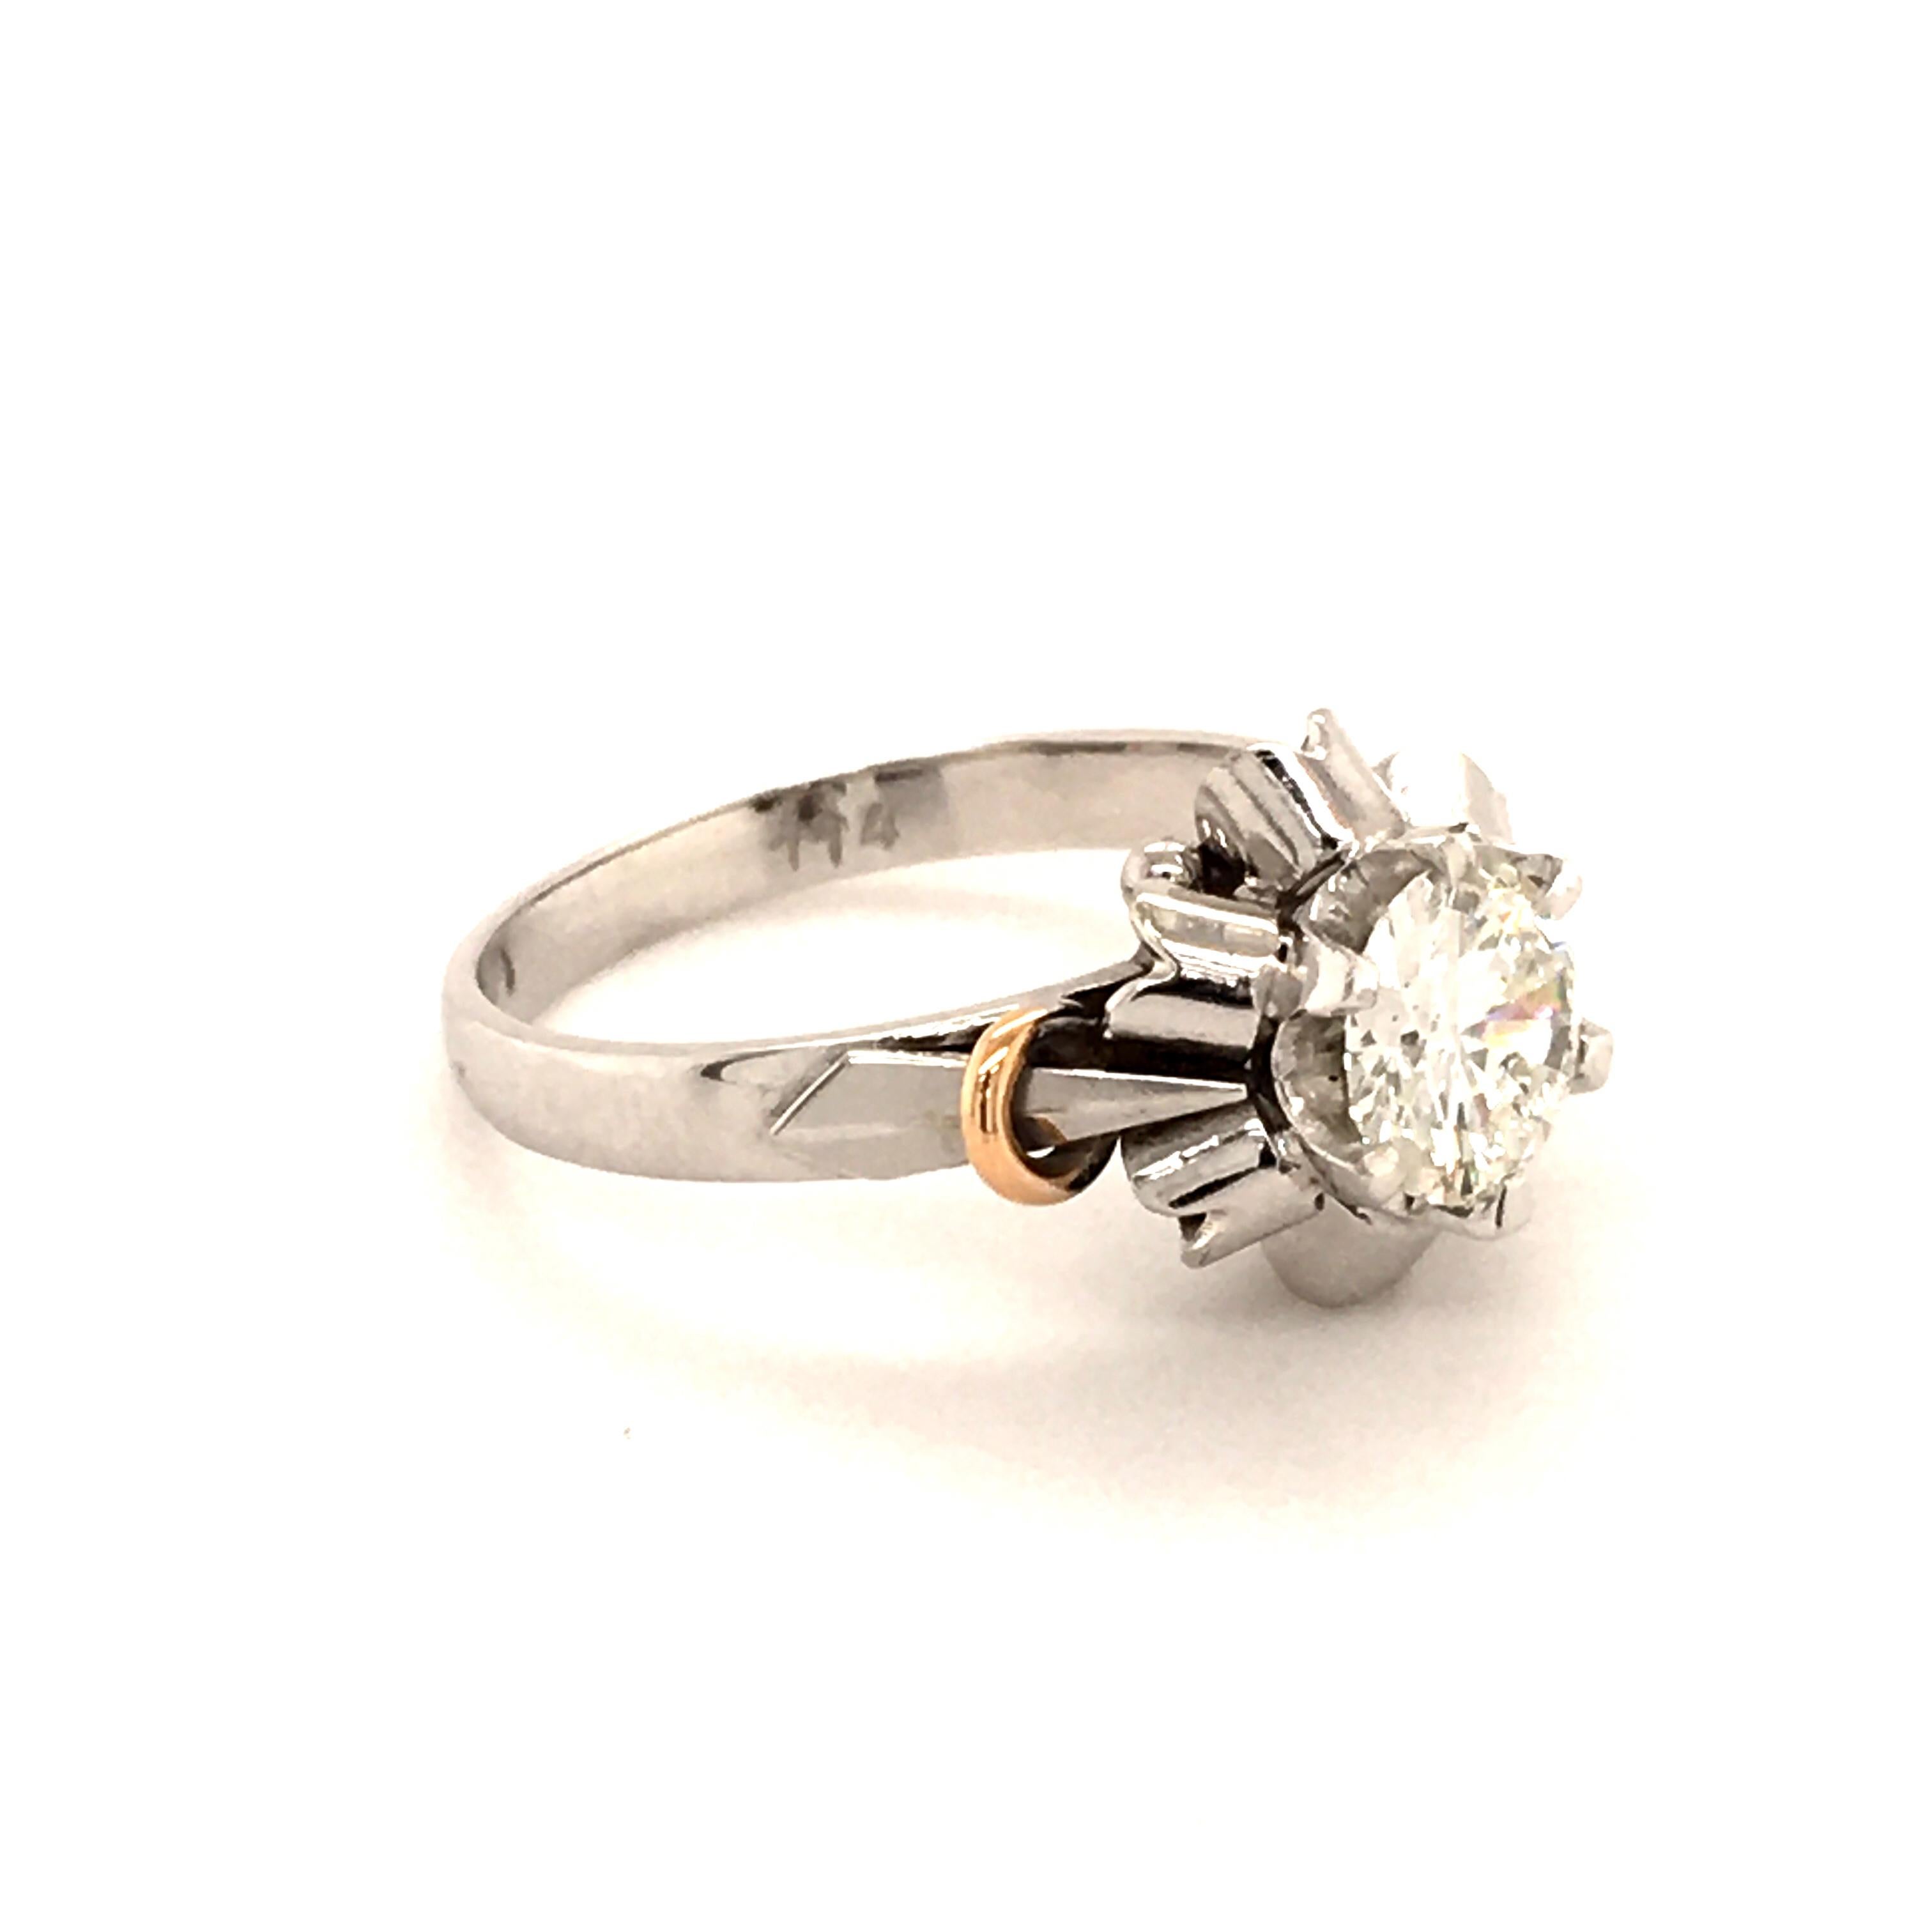 Dieser sehr hübsche und verspielte Ring ist in sechs Zacken mit einem runden Diamanten im Brillantschliff von 1,14 Karat, G-I1, besetzt. Die sechs Elemente, die den Mittelstein umgeben, erinnern an einen stilisierten Ballerina-Rock. Die beiden Bögen